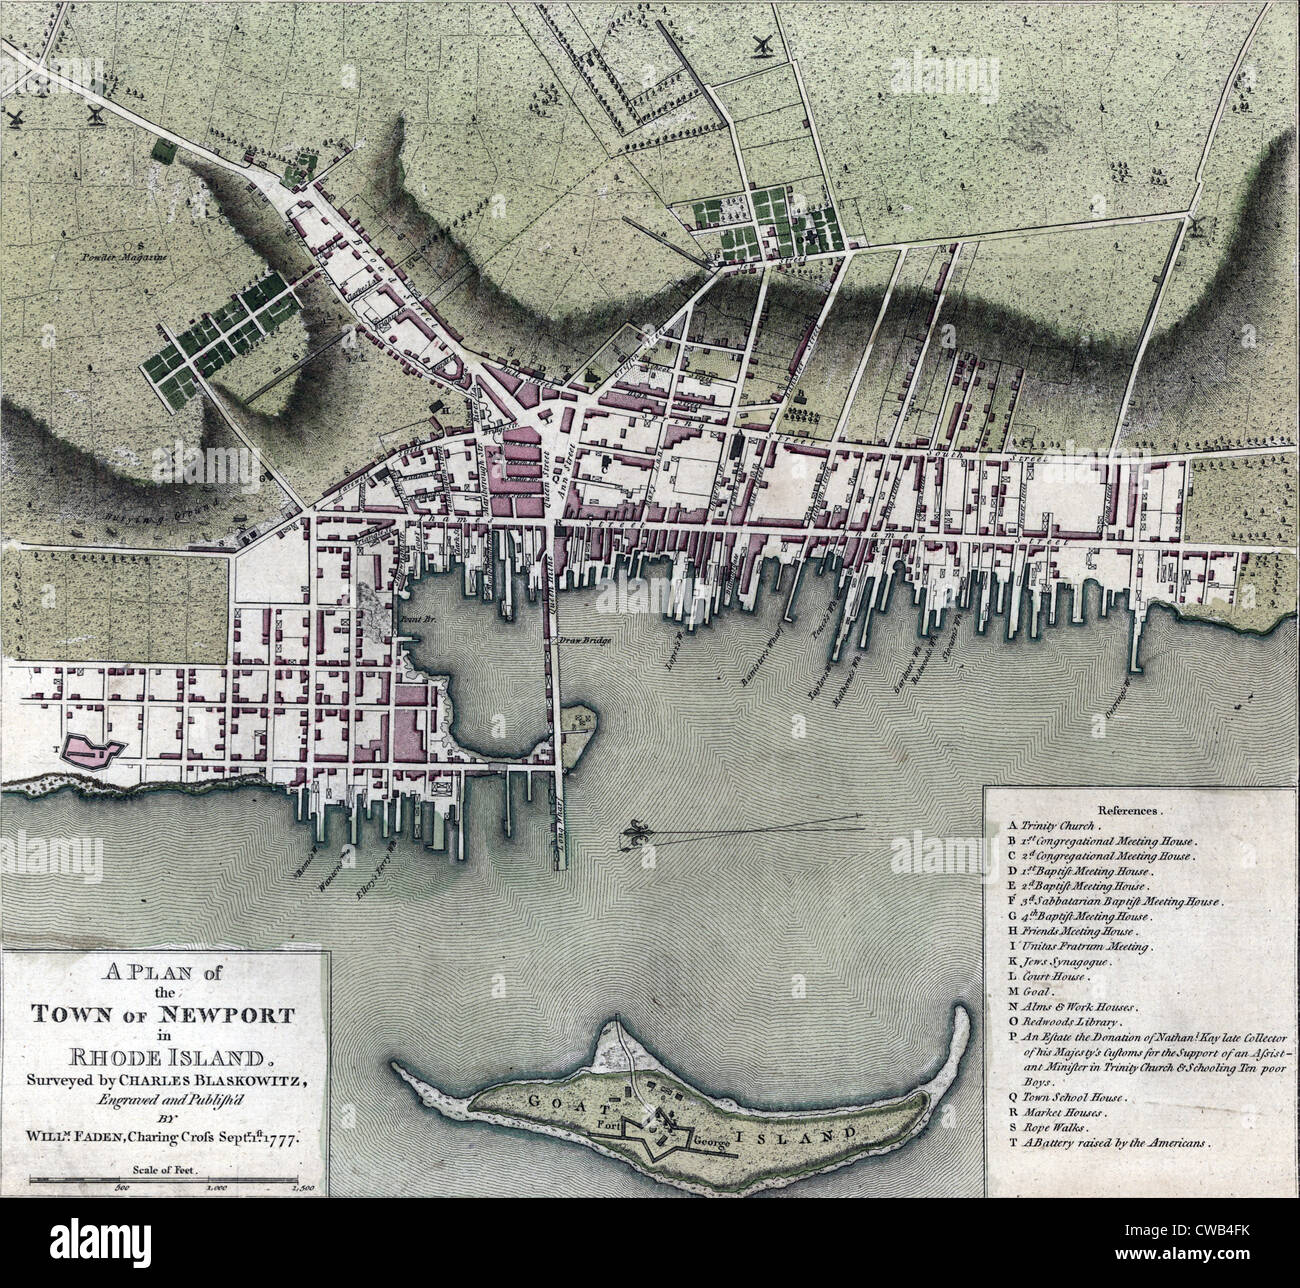 Landkarten und Stadtpläne. Ein Plan der Stadt Newport auf Rhode Island. Von Charles Blaskowitz, graviert und publish'd von Willm Befragten. Faden. Stockfoto